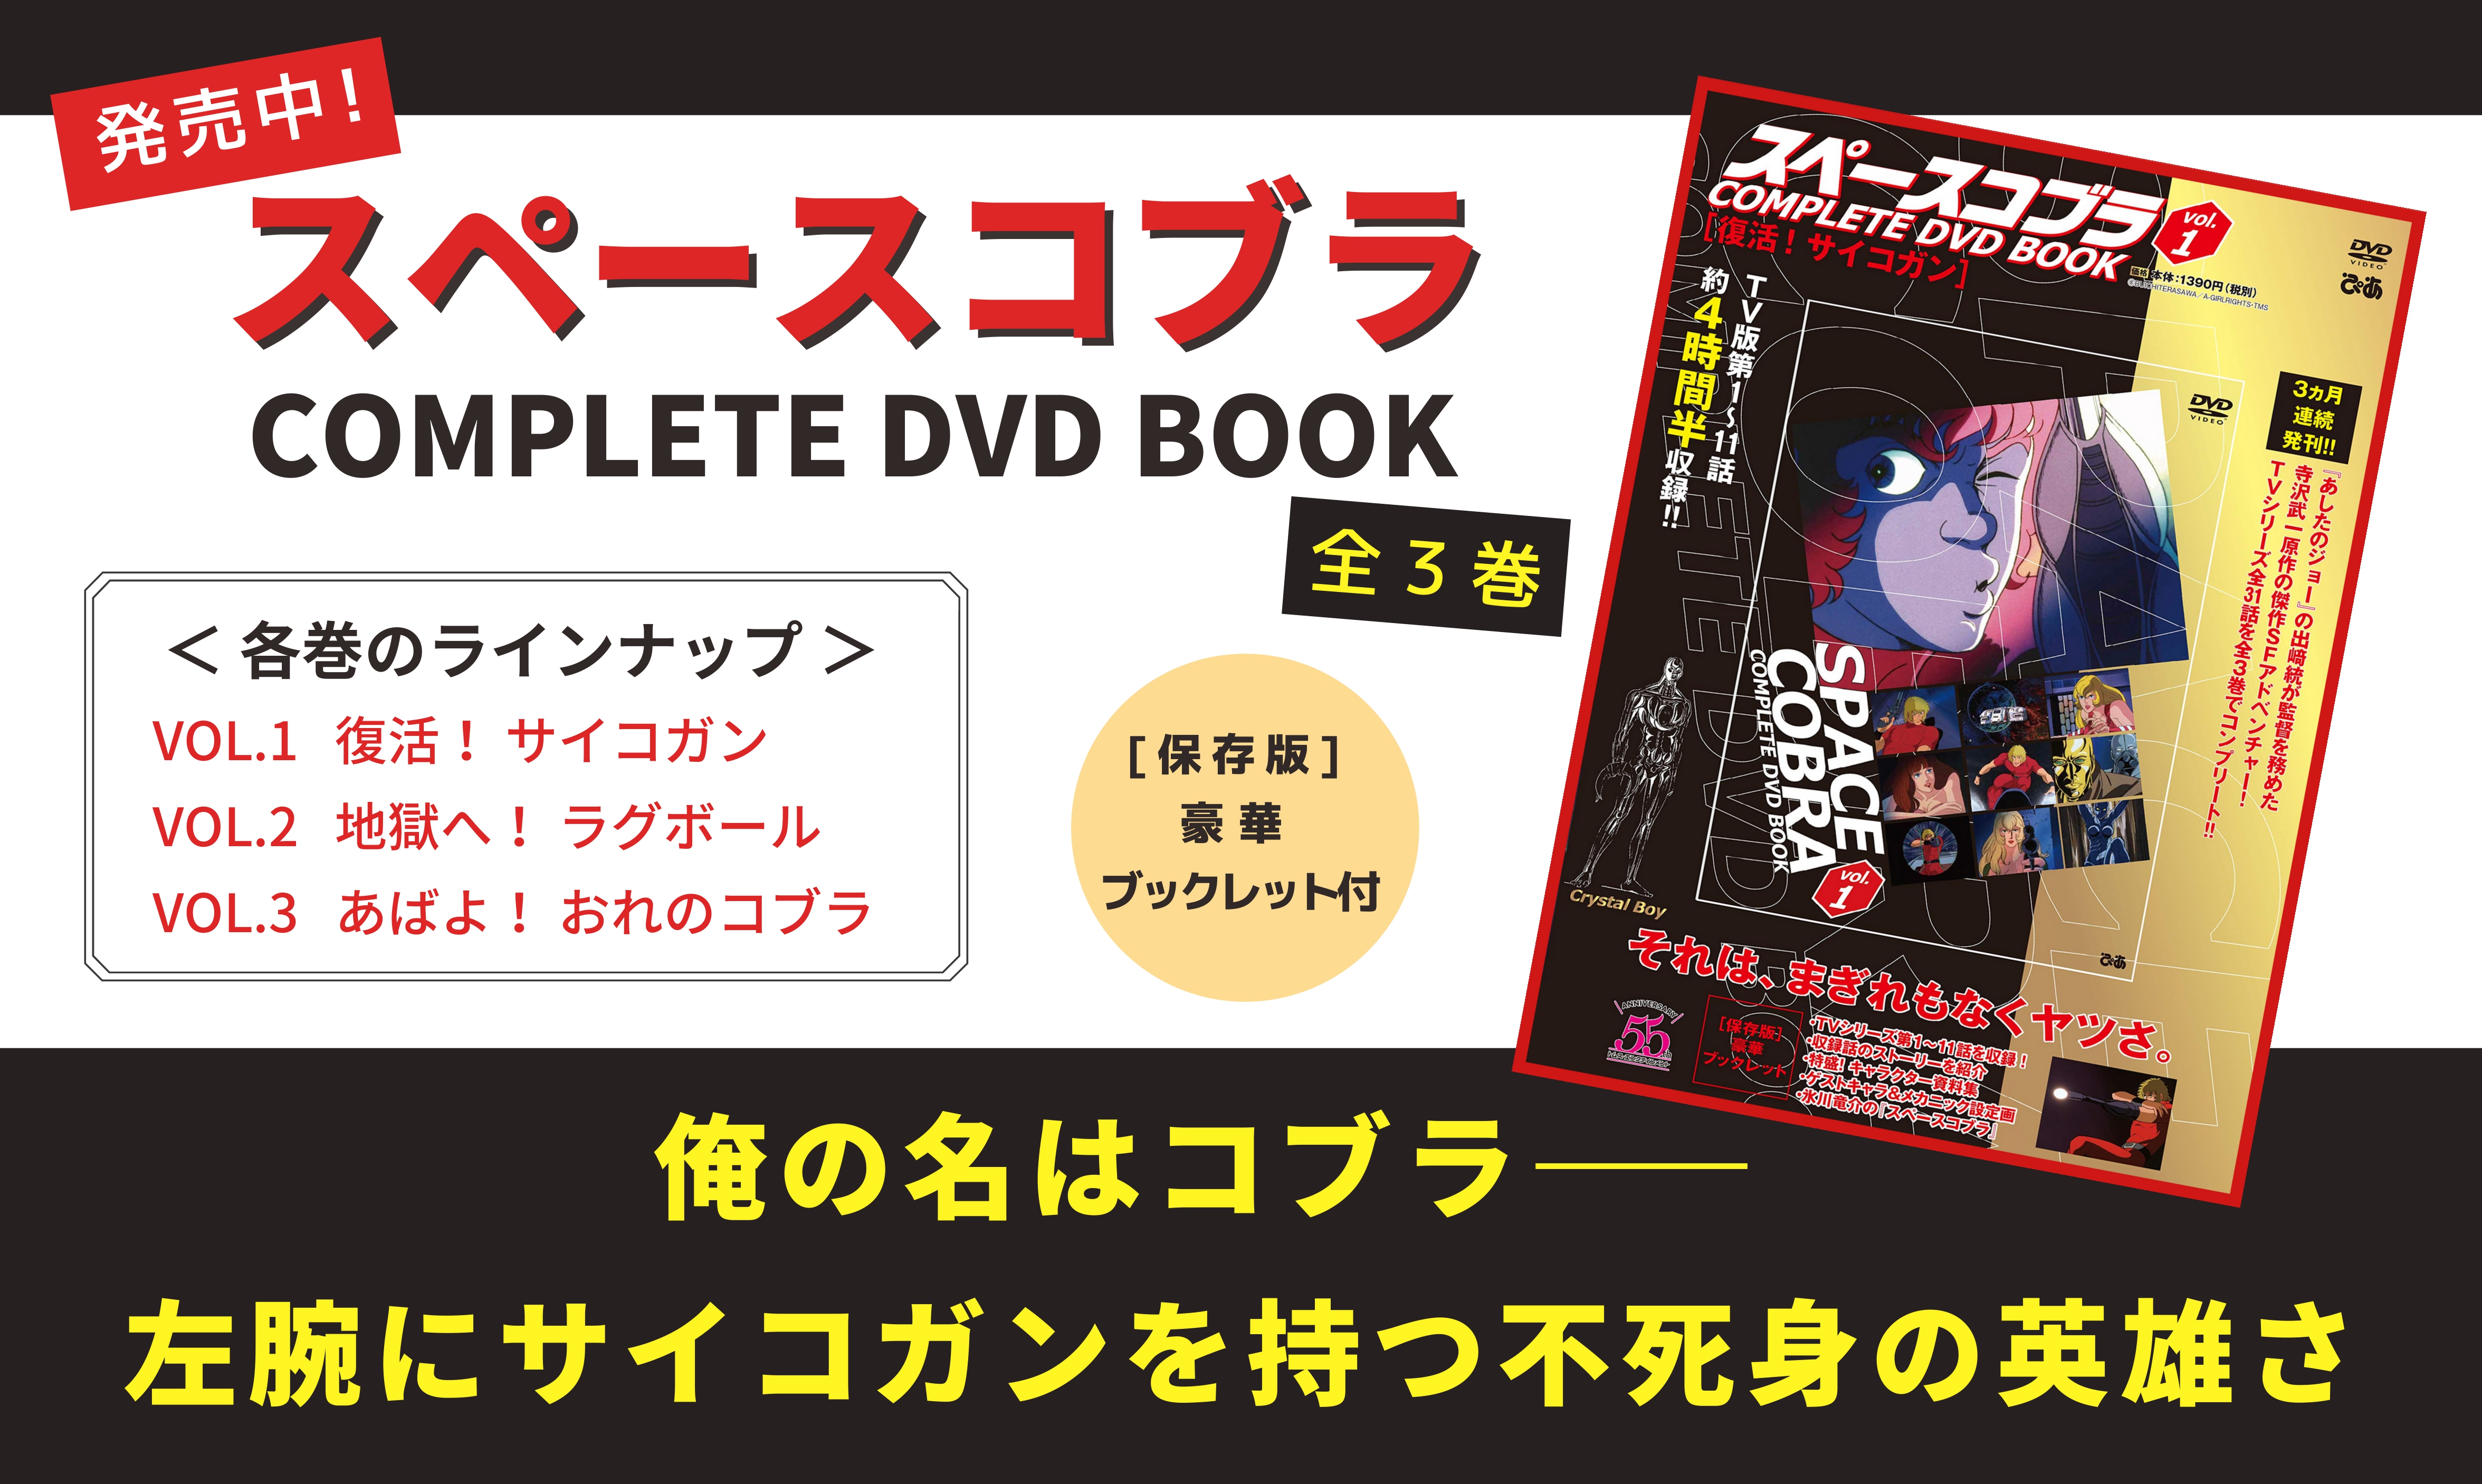 スペースコブラ COMPLETE DVD BOOK」vol.1 - ぴあ株式会社